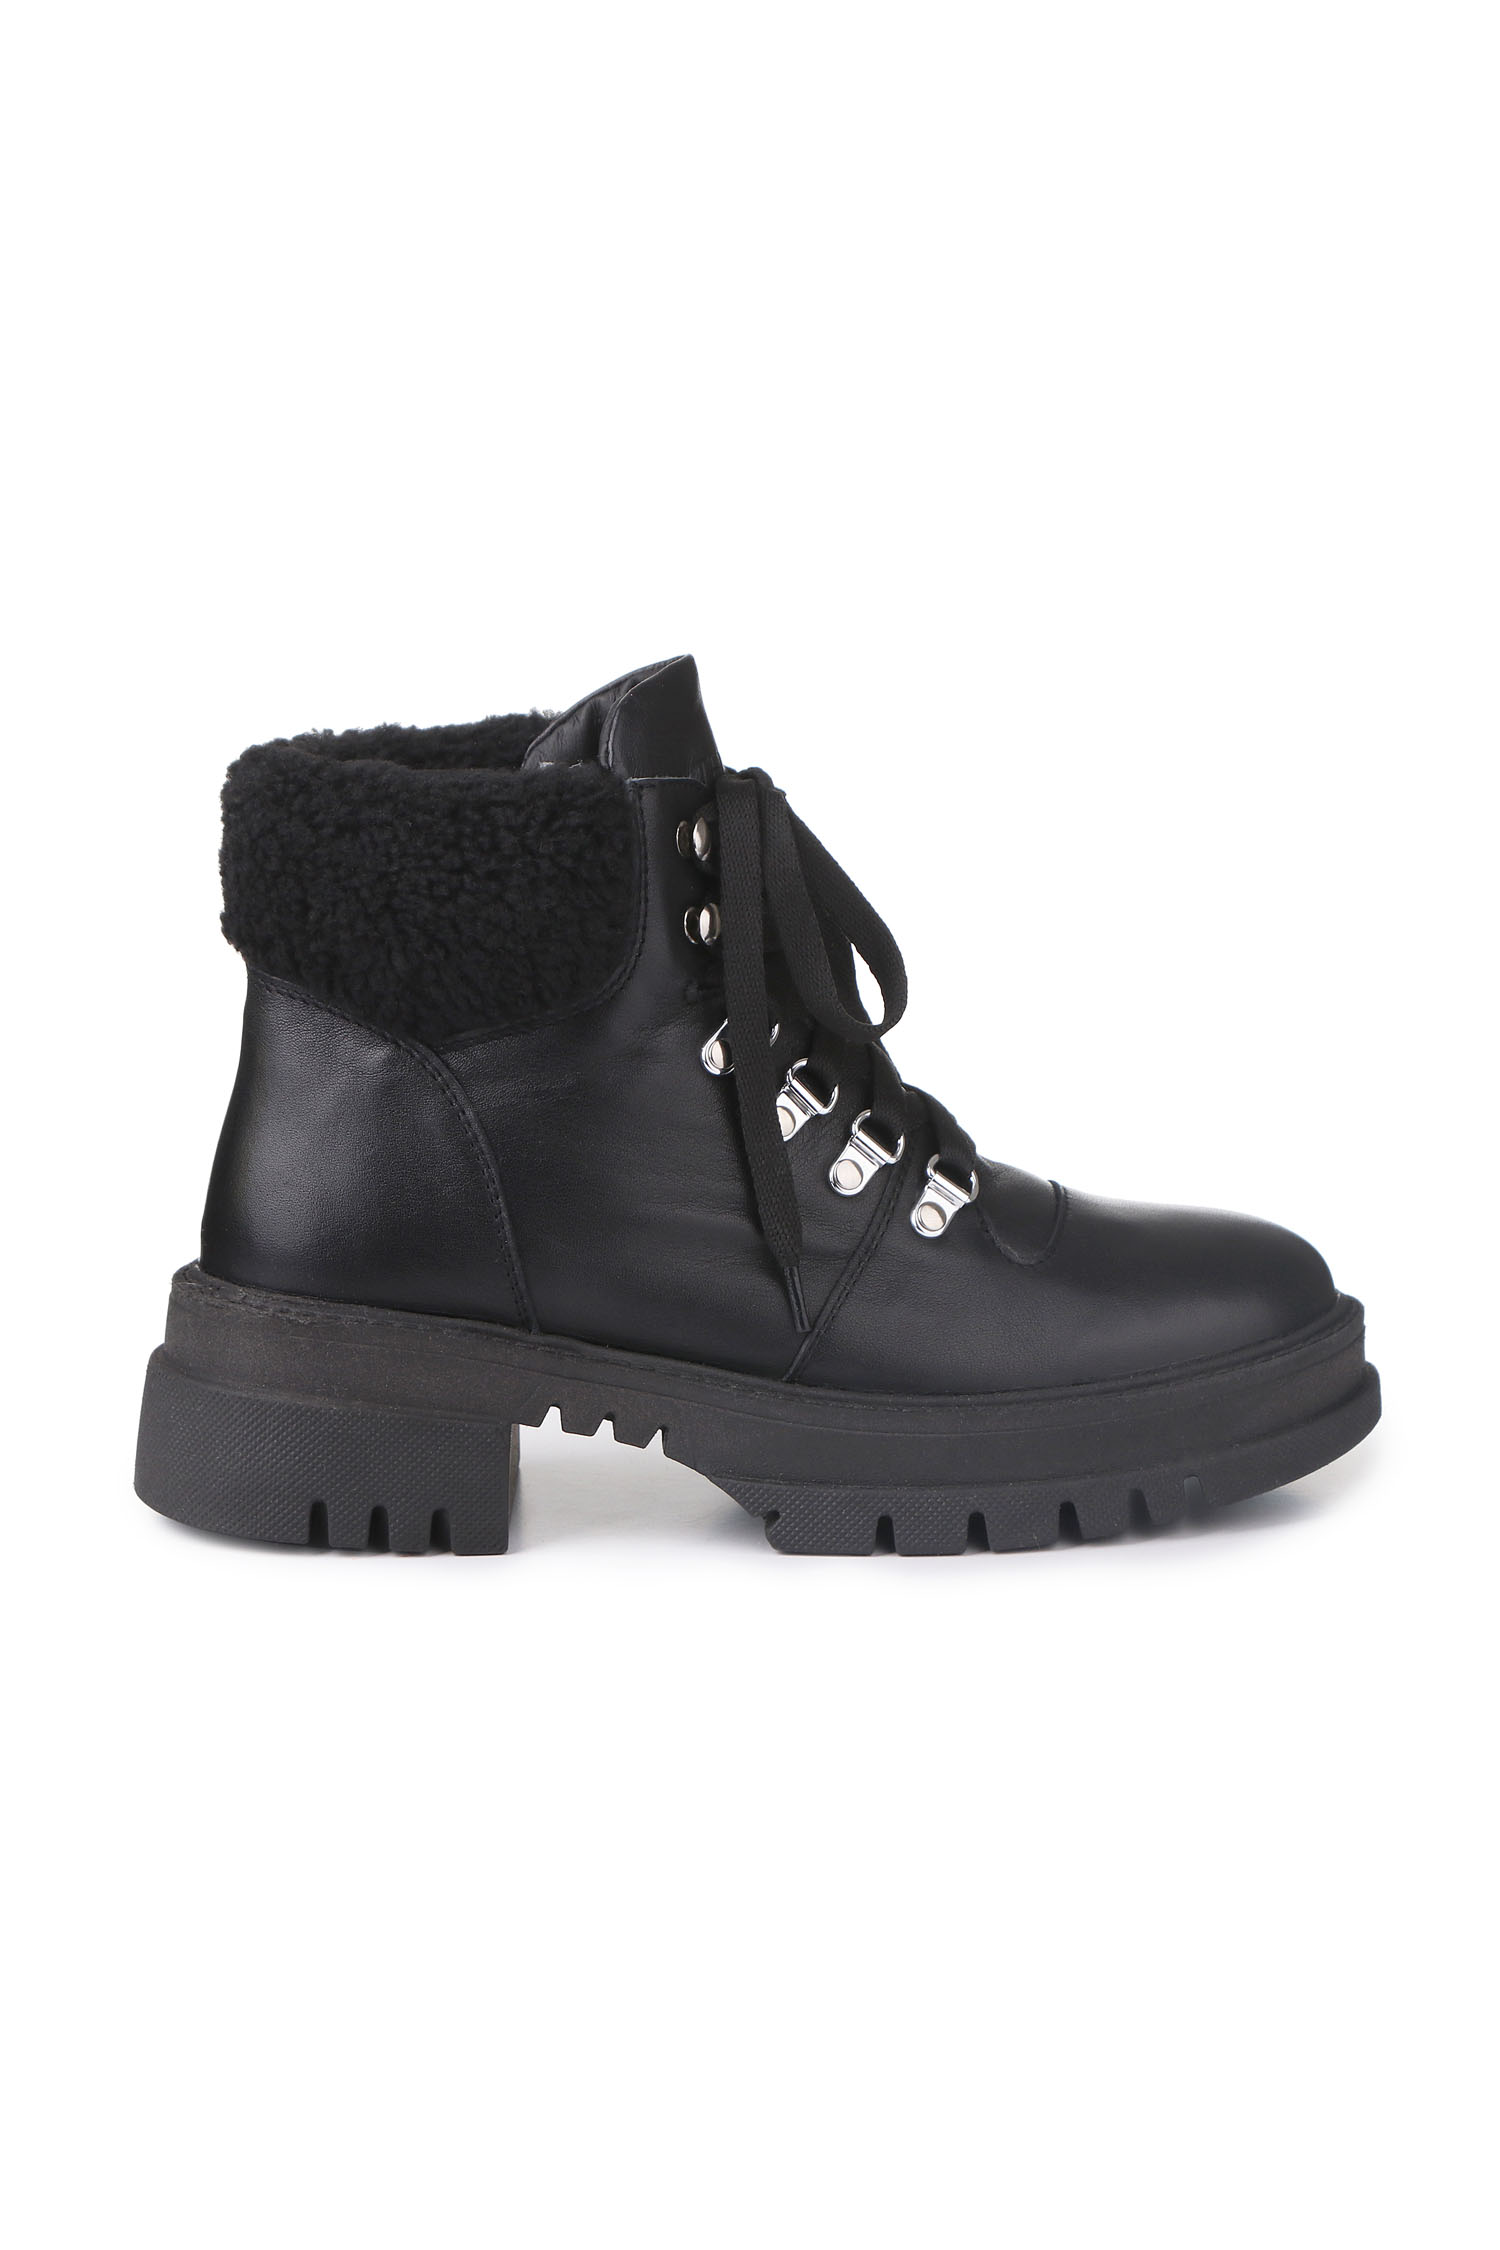 Зимові черевики Hiking boots чорні з чорним хутром - THE LACE фото 123284